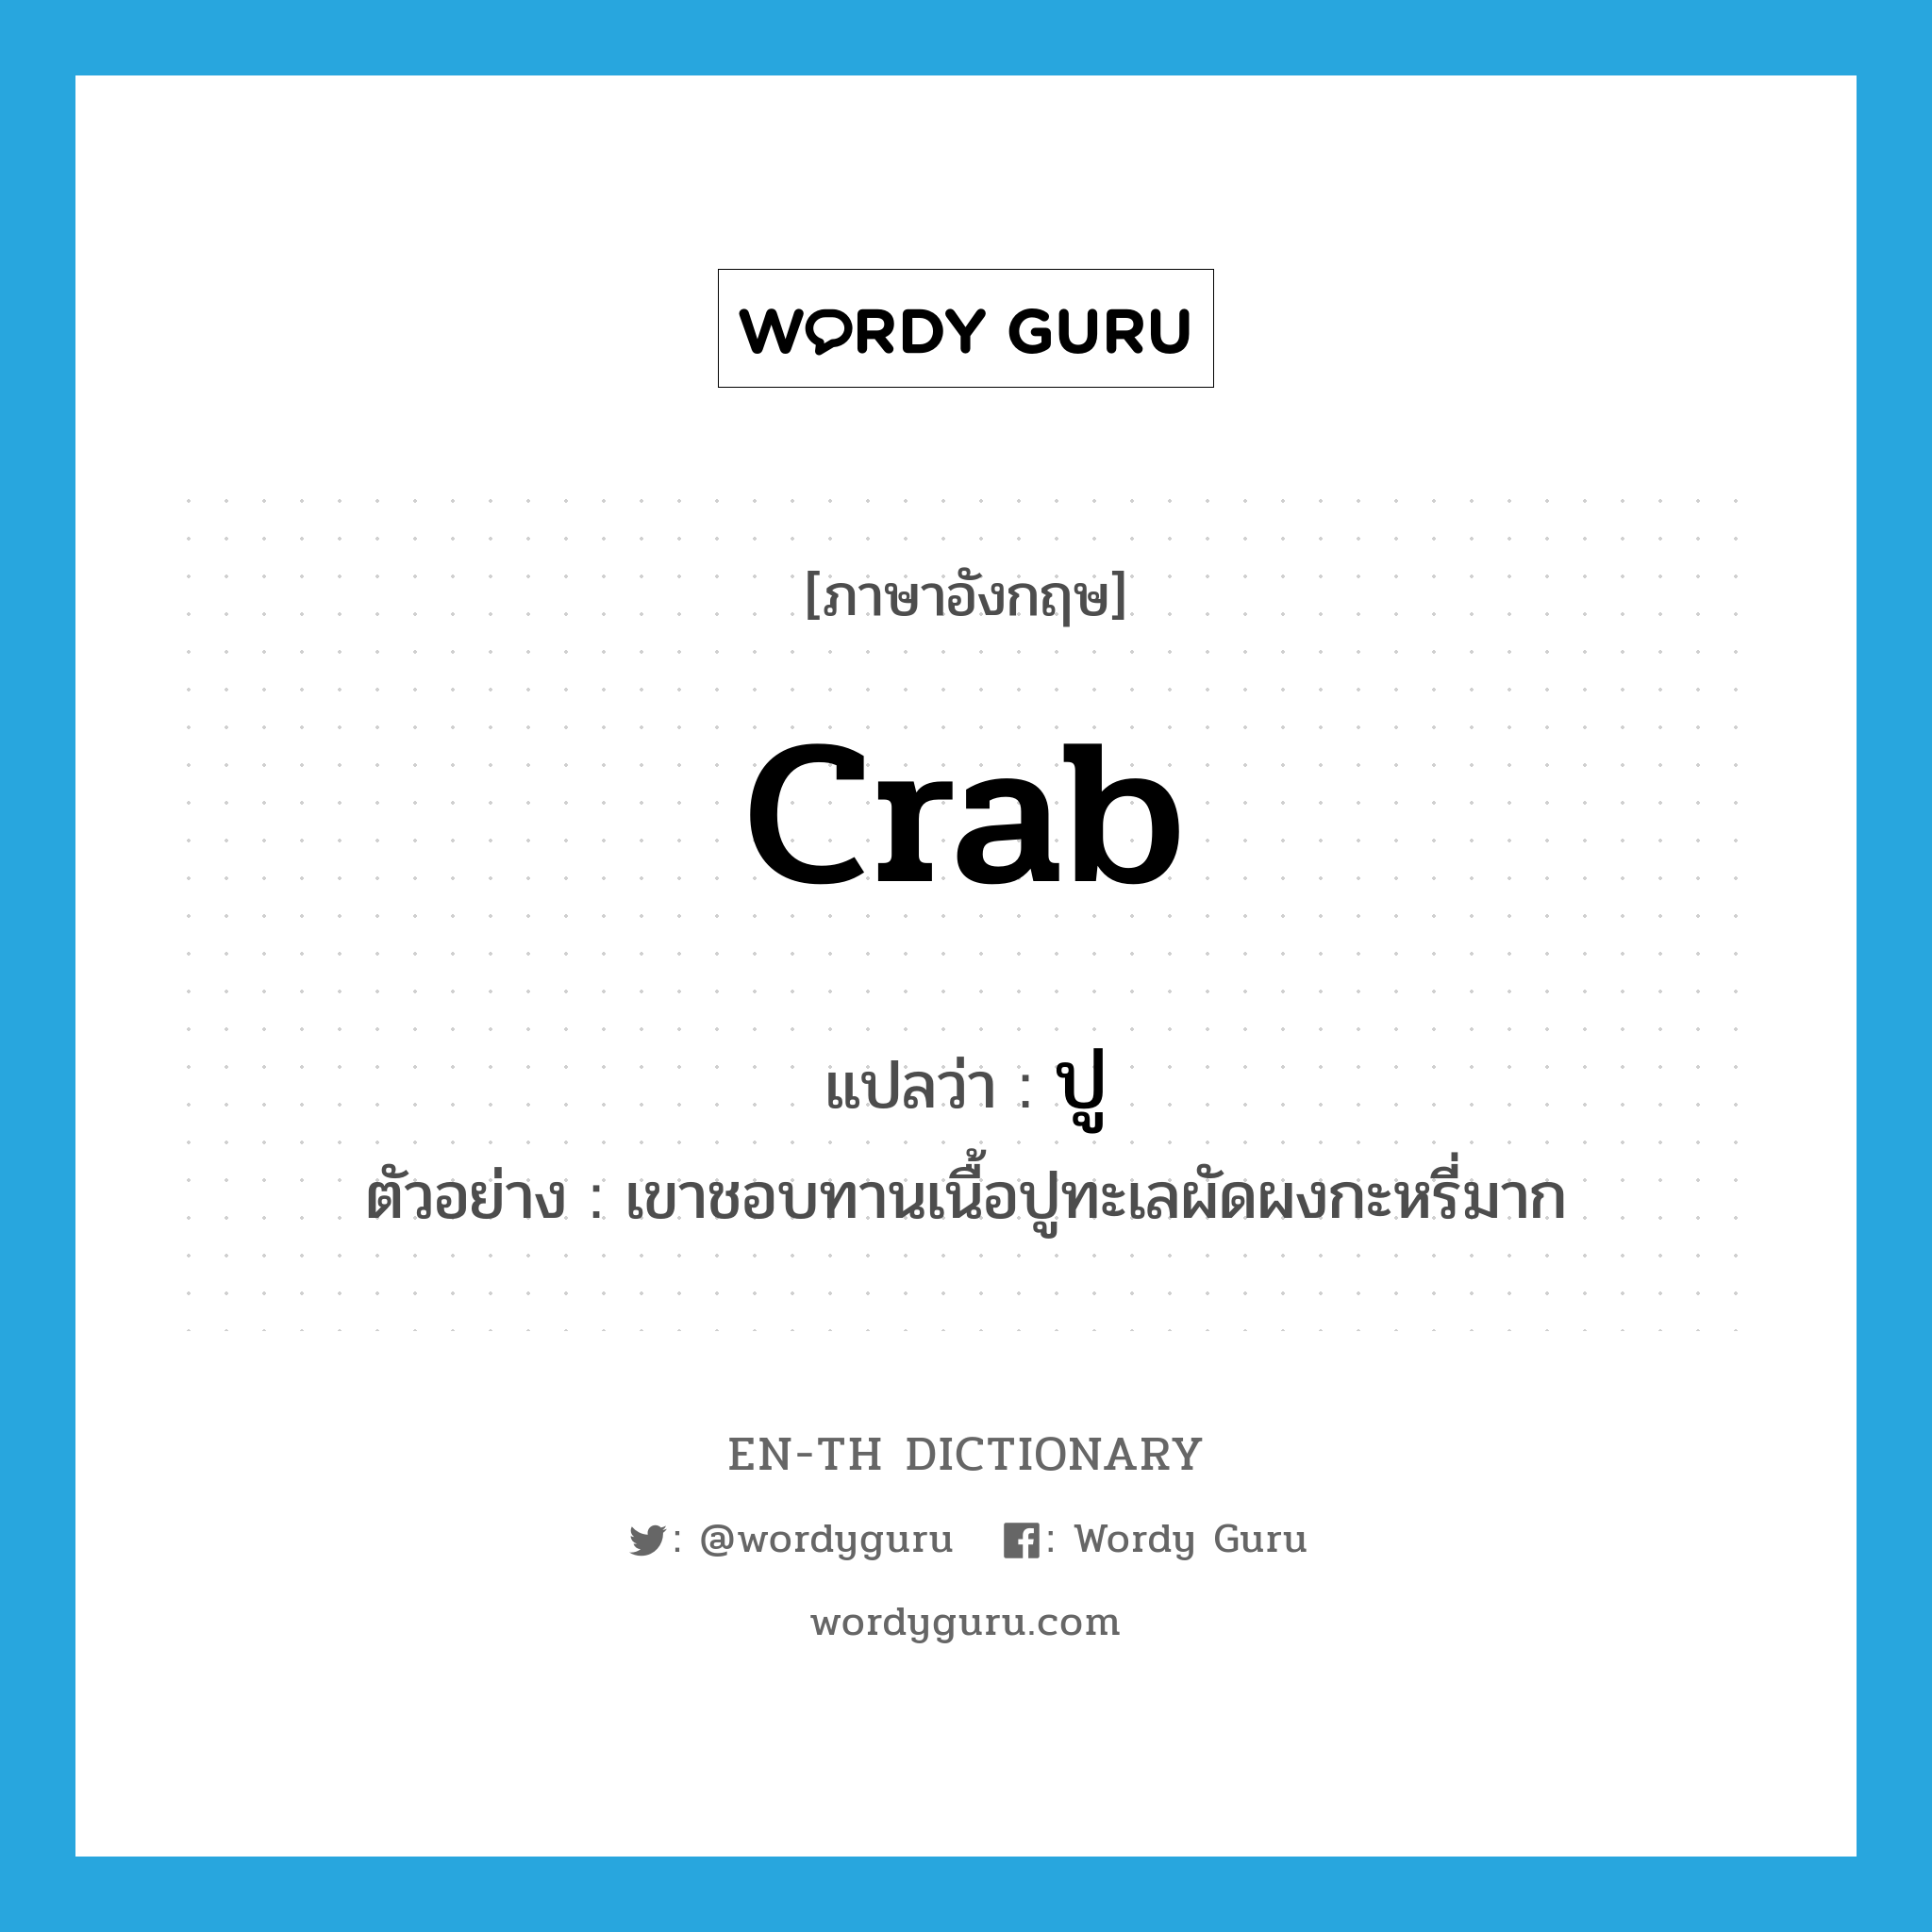 ปู ภาษาอังกฤษ?, คำศัพท์ภาษาอังกฤษ ปู แปลว่า crab ประเภท N ตัวอย่าง เขาชอบทานเนื้อปูทะเลผัดผงกะหรี่มาก หมวด N